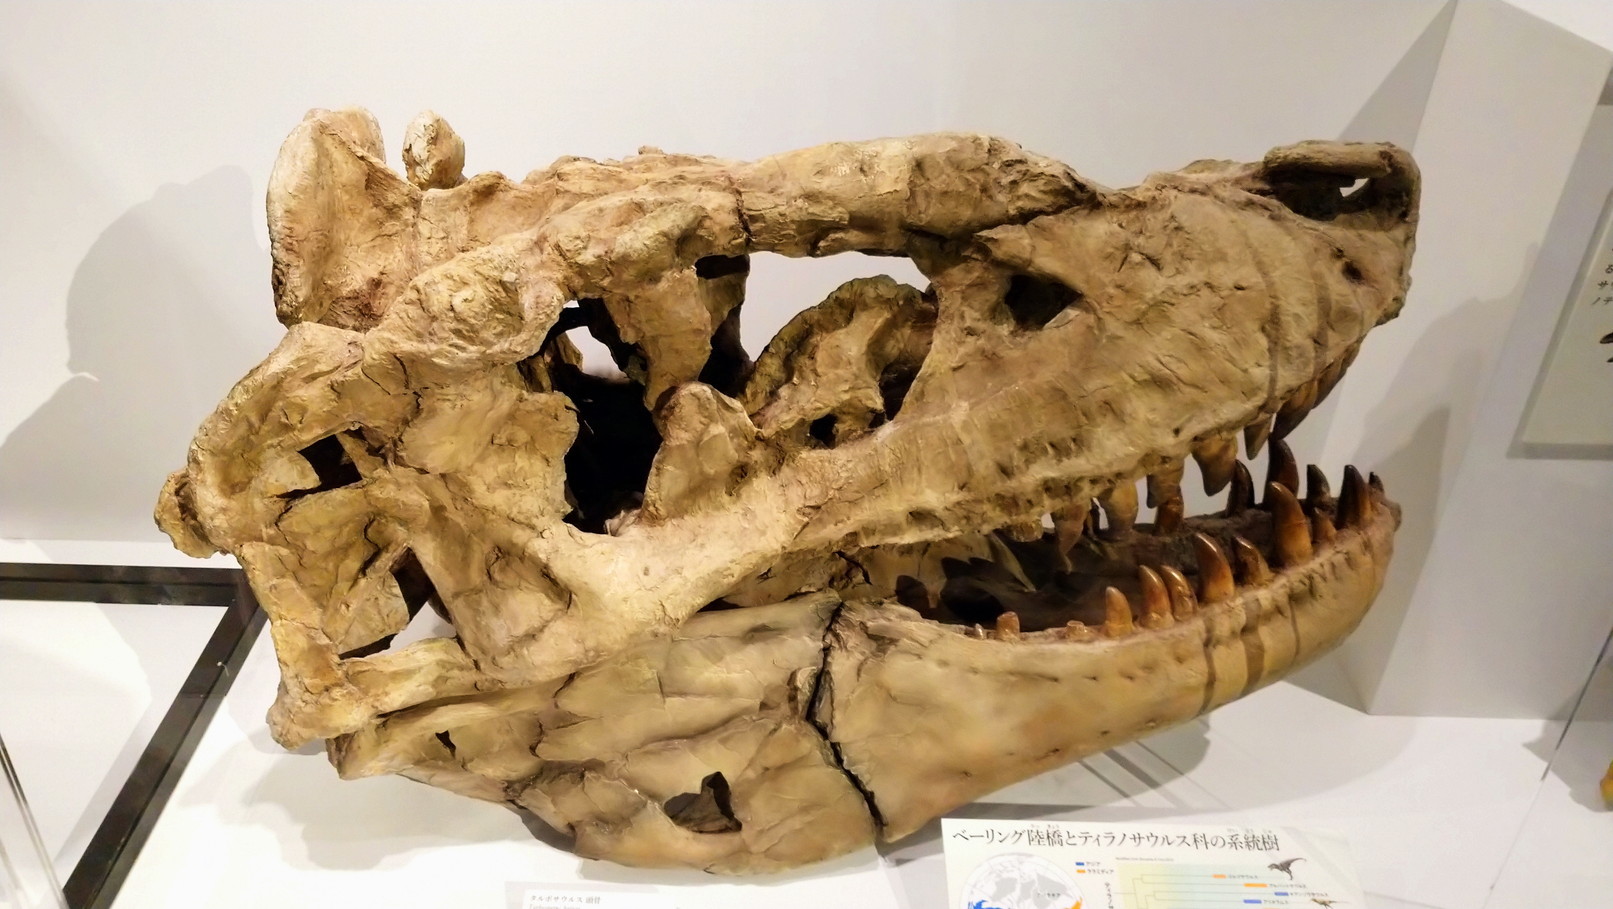 トリケラトプス「レイン」のほぼ完全な全身骨格化石をDinoScience 恐竜科学博 ～ララミディア大陸の恐竜物語～@パシフィコ横浜でみた！_c0002171_00044341.jpg